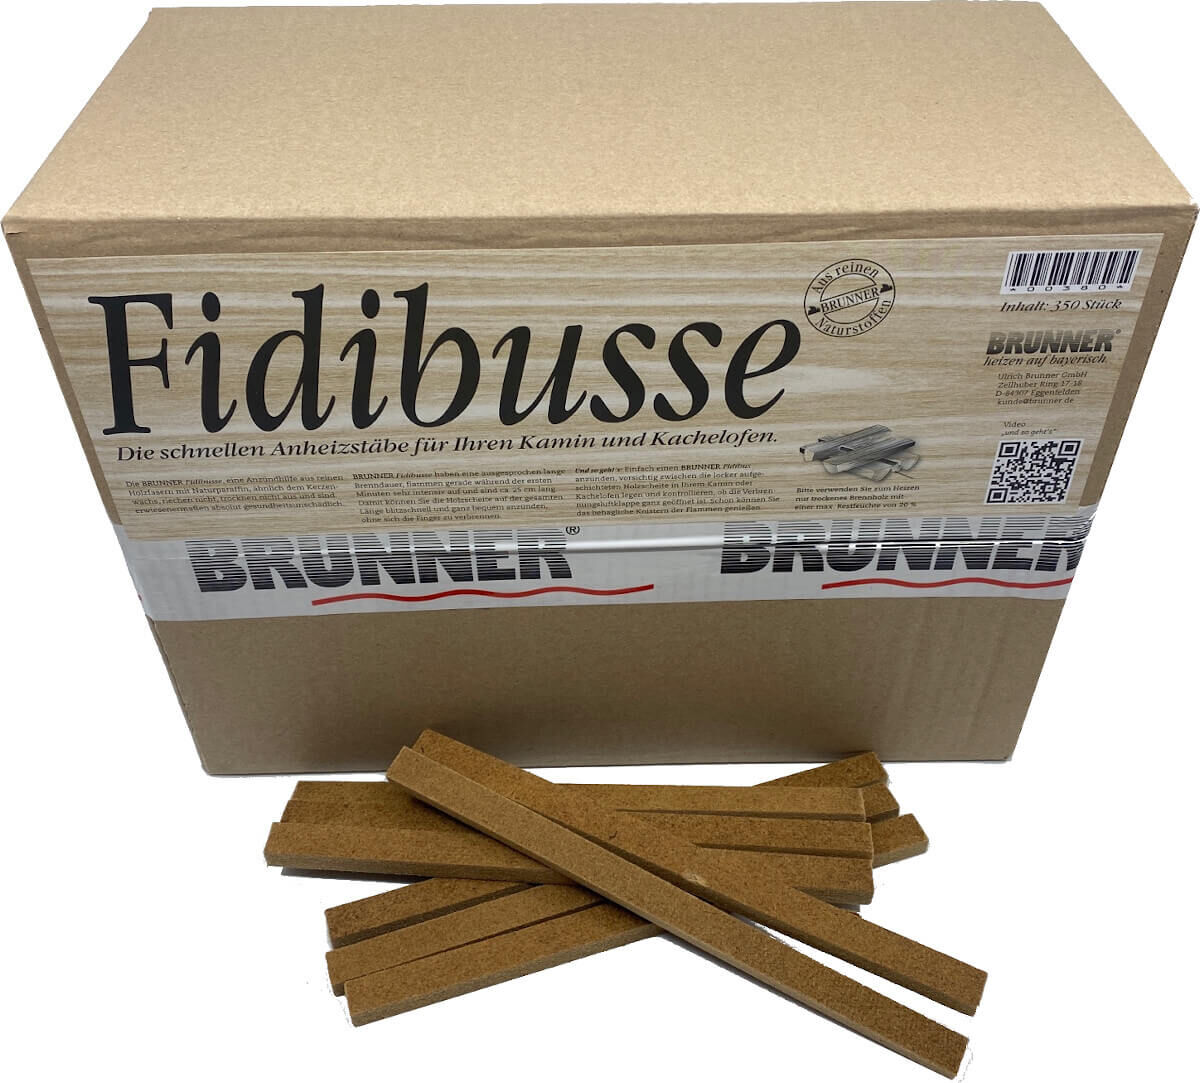 350 Original Brunner Fidibusse Anzünder ~ 1x Großpackung